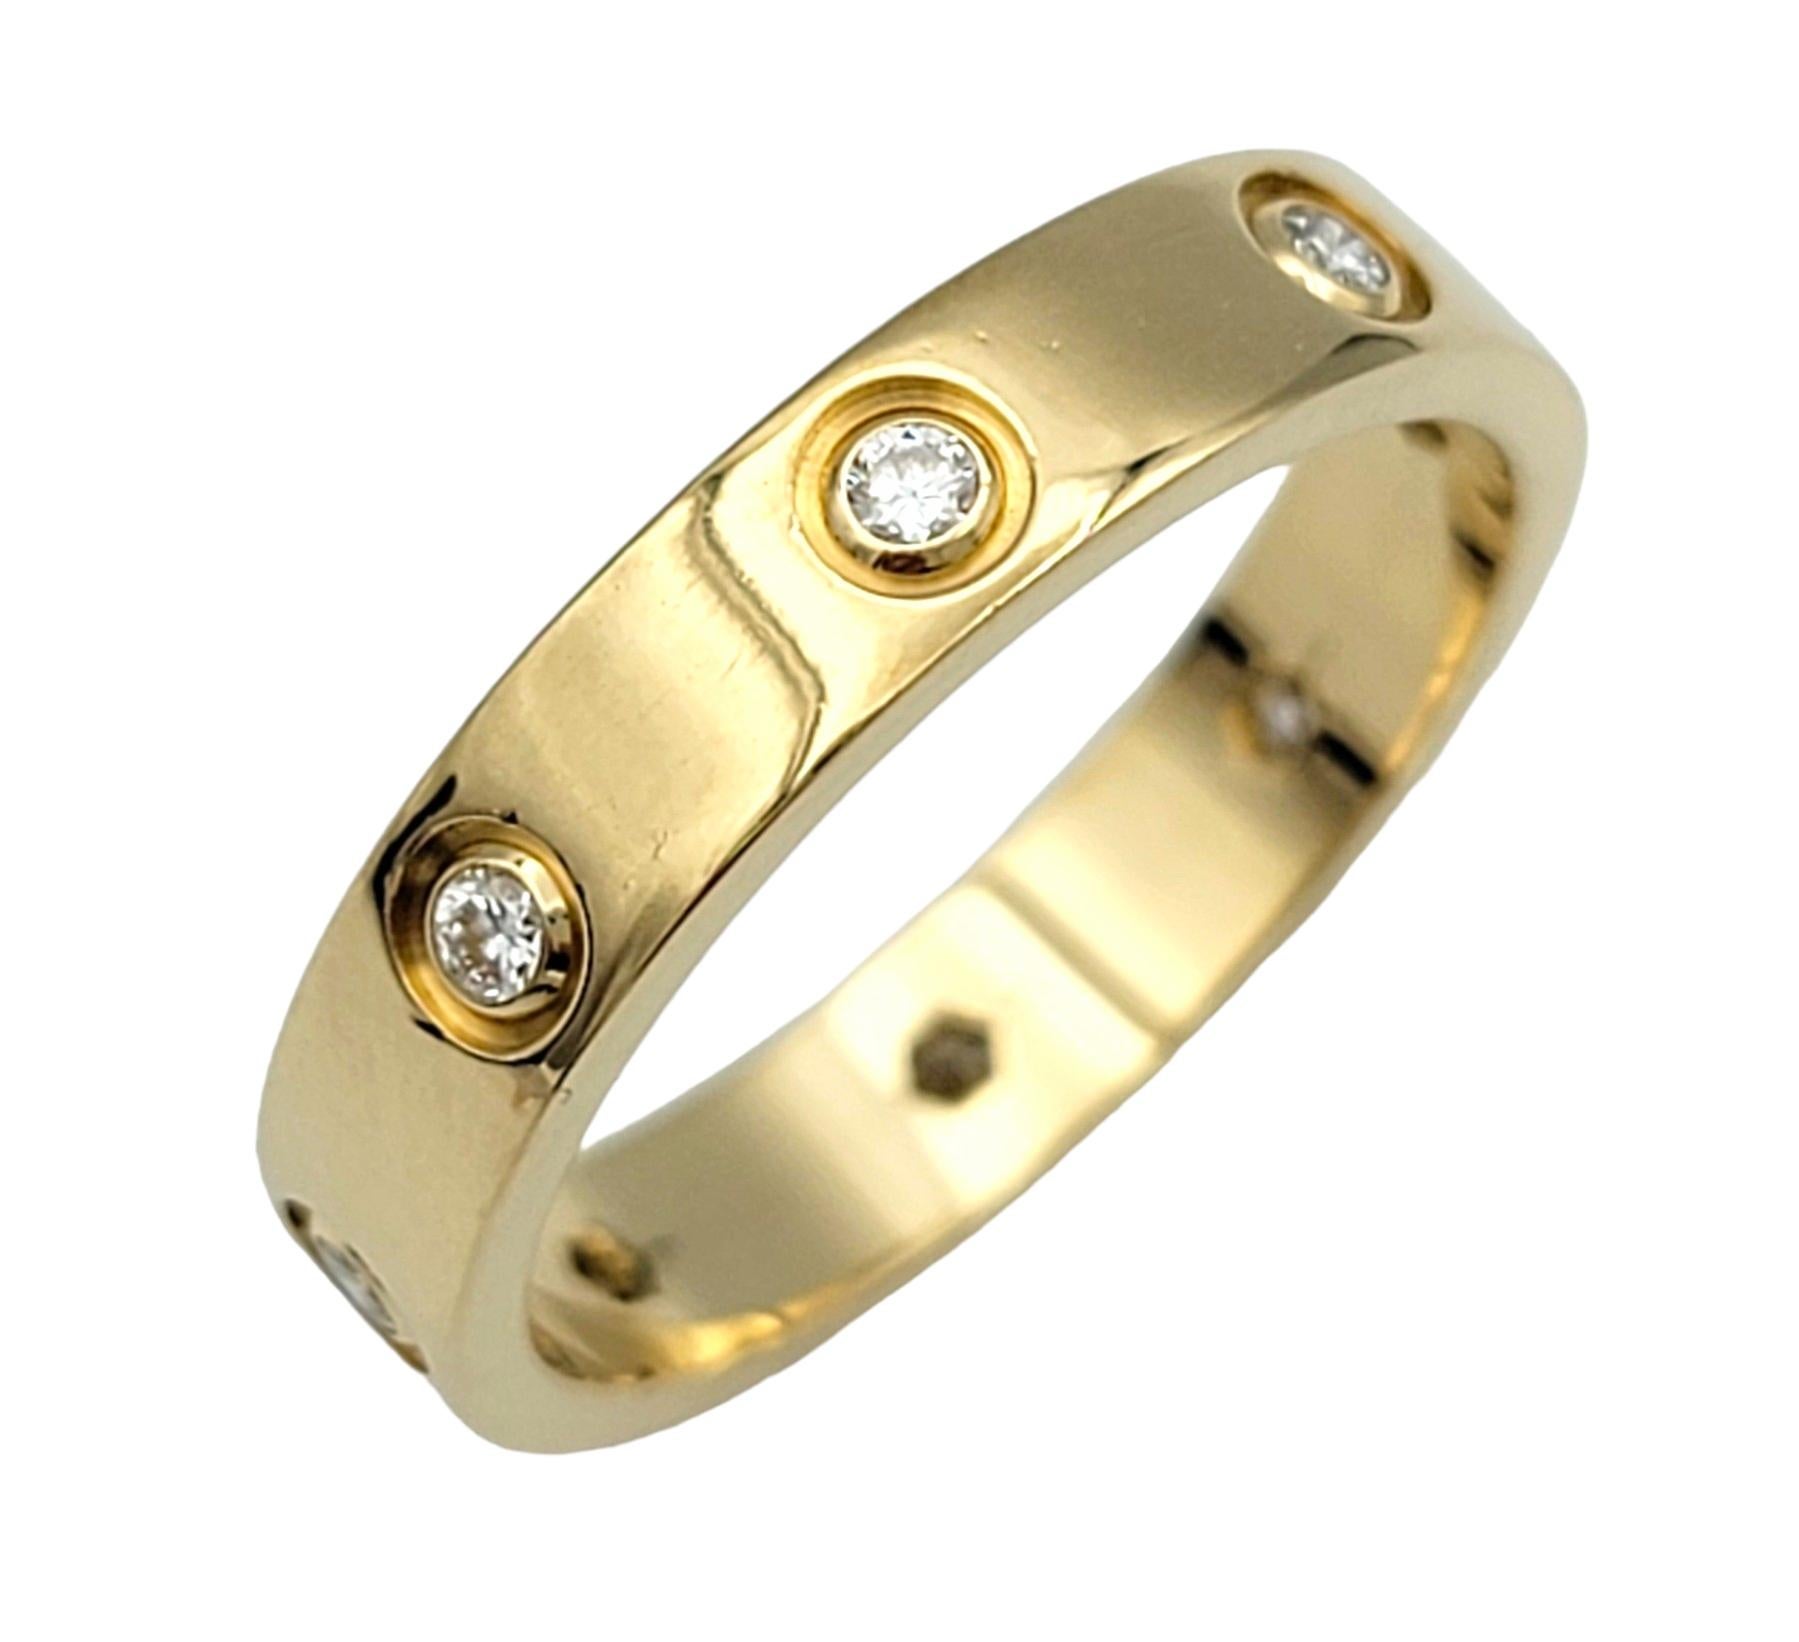 Taille de l'anneau : 6.75

Cette magnifique bague Love Band de Cartier, sertie de diamants, est un symbole emblématique de l'amour durable et de l'élégance intemporelle. Fabriquée par la célèbre marque de luxe Cartier, cette bague incarne la